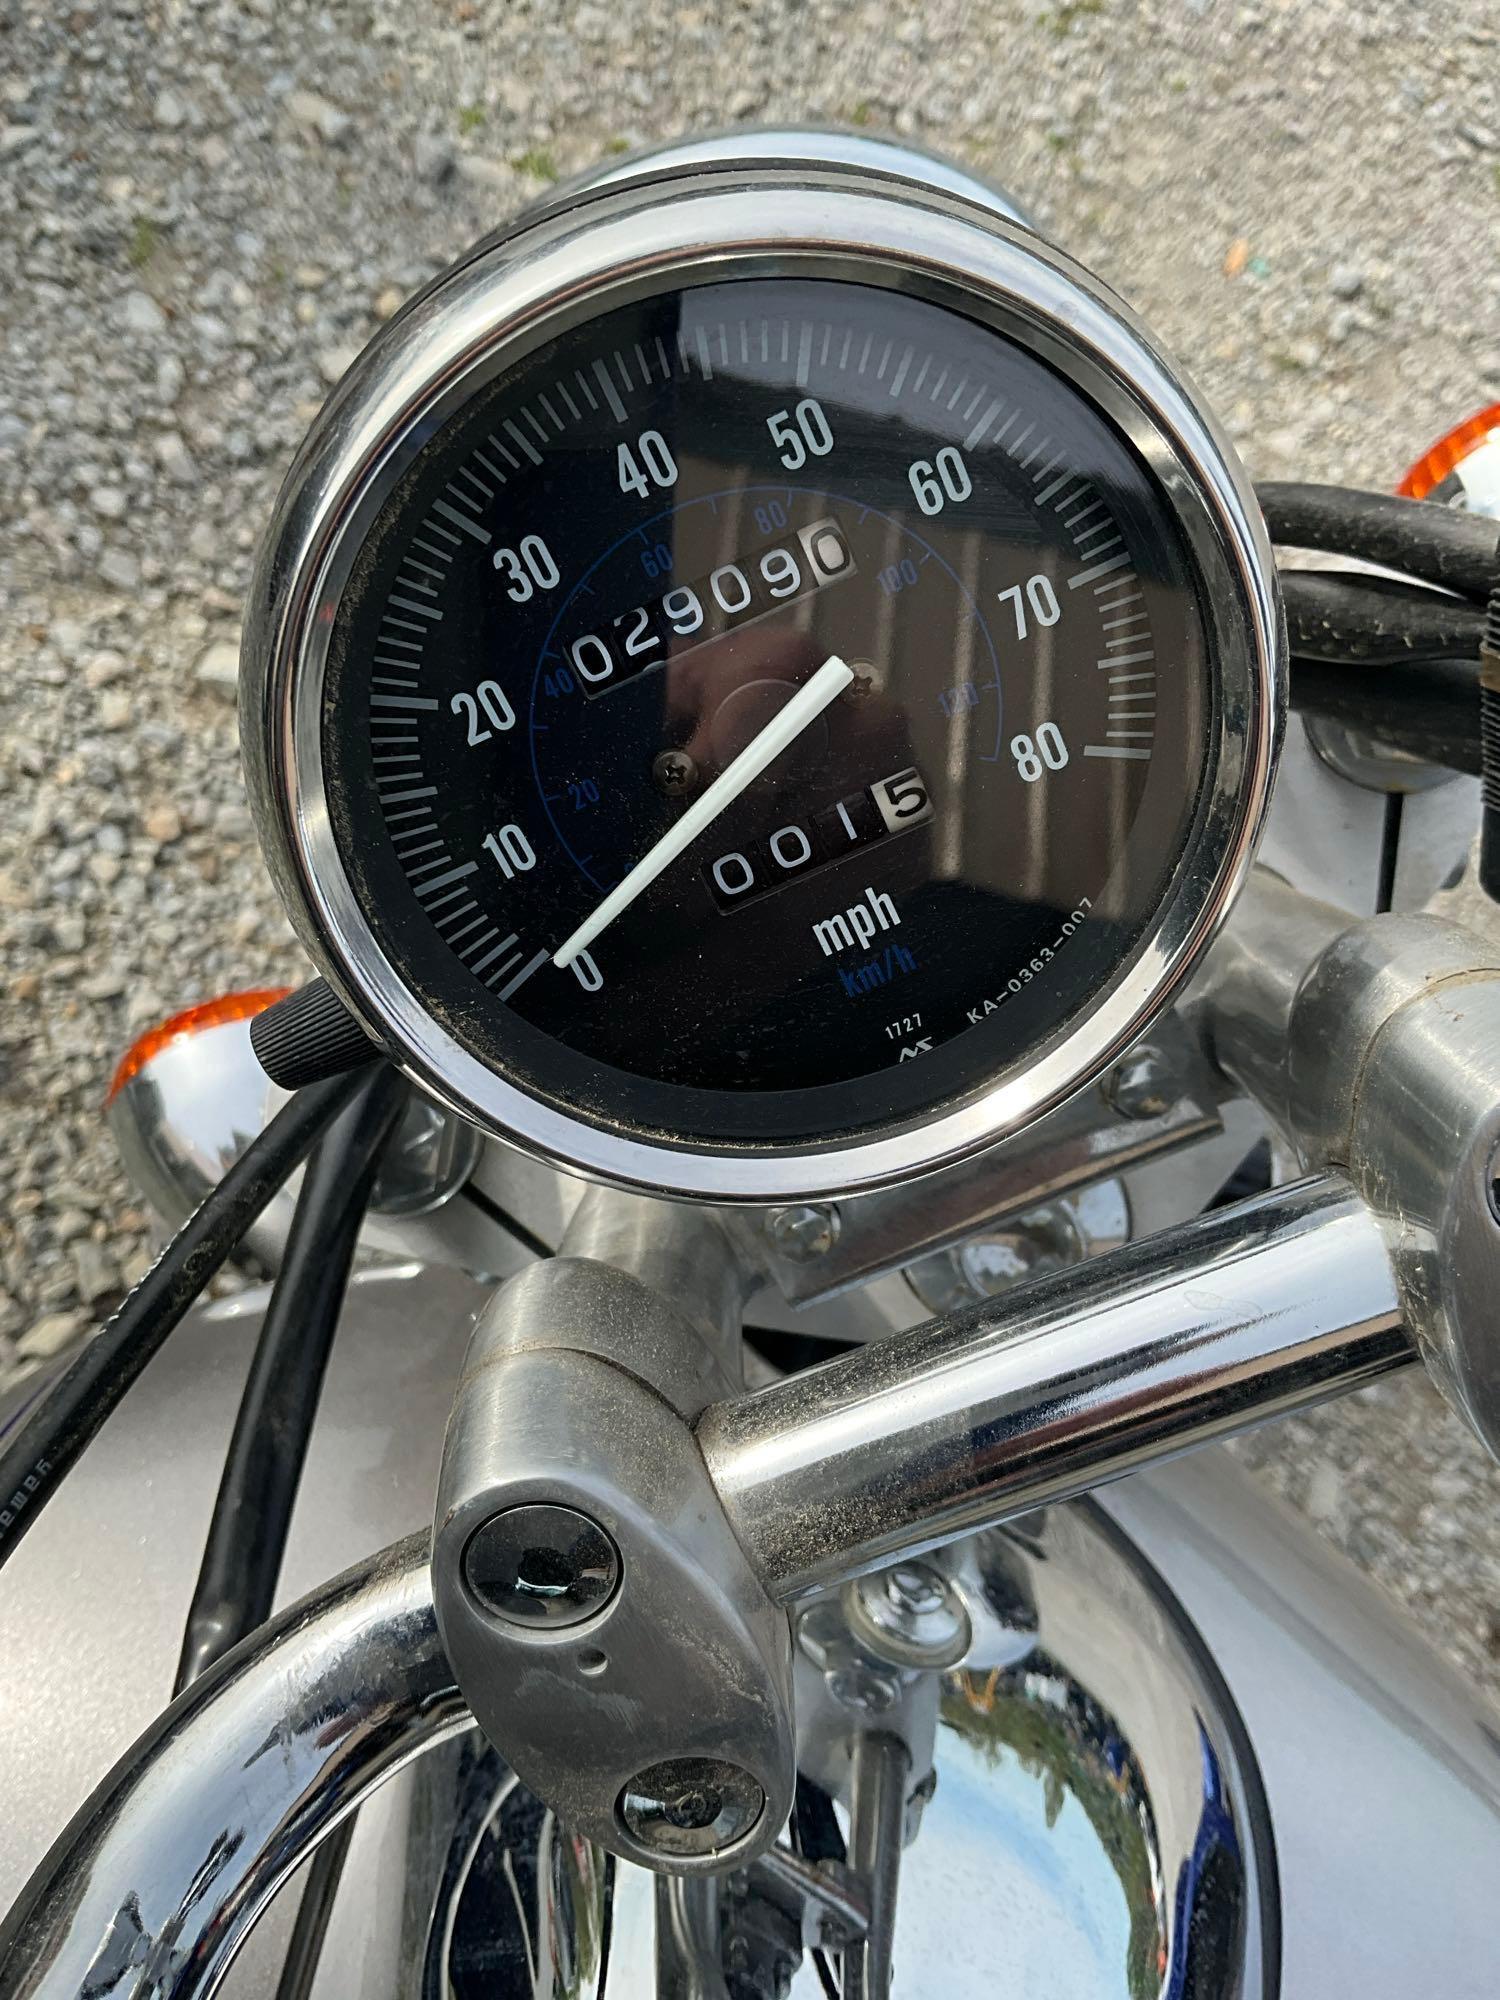 2004 Kawasaki motorcycle